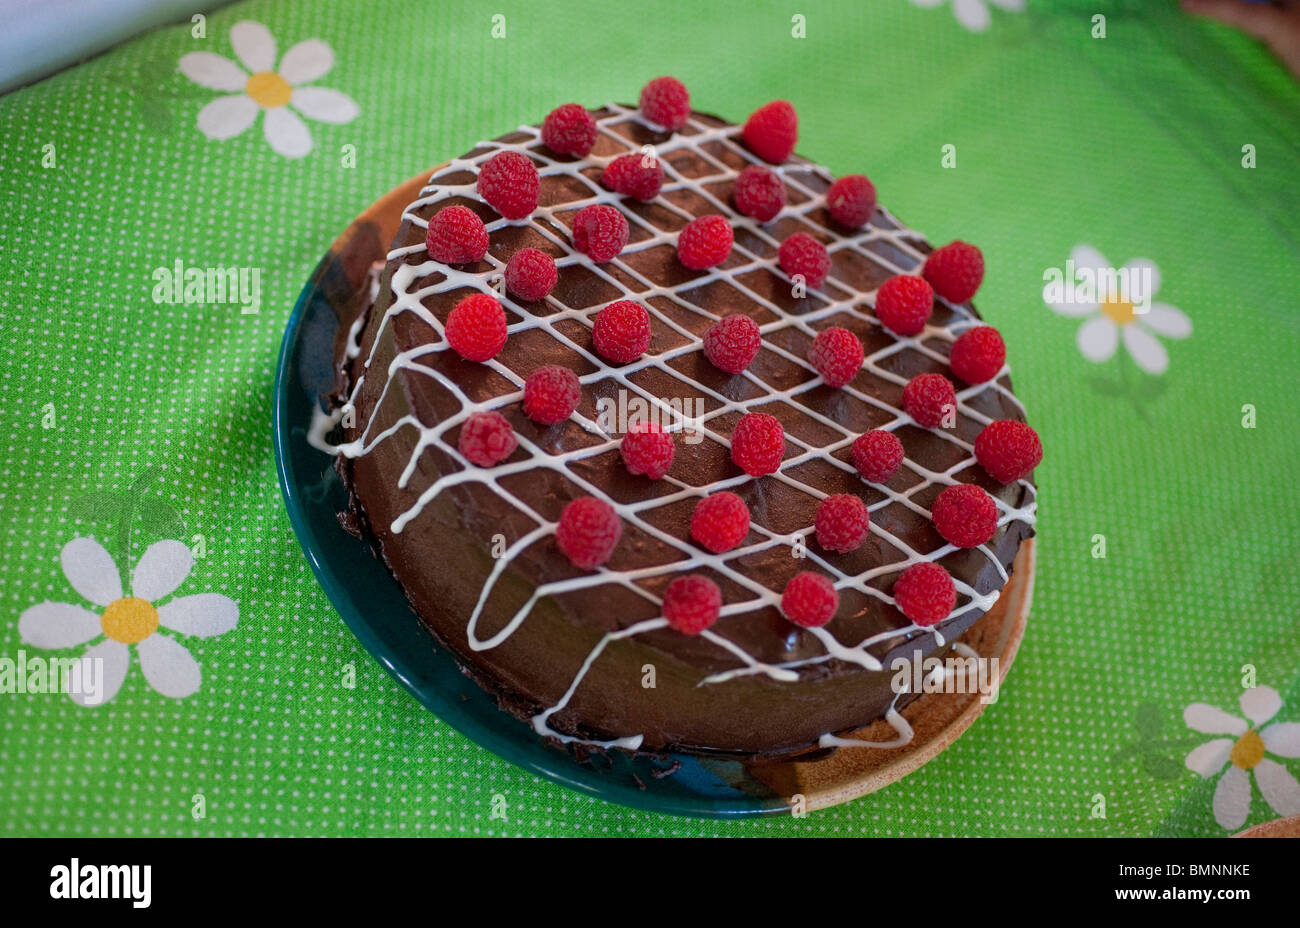 Un gâteau au chocolat avec des framboises est situé sur une nappe colorée. Banque D'Images